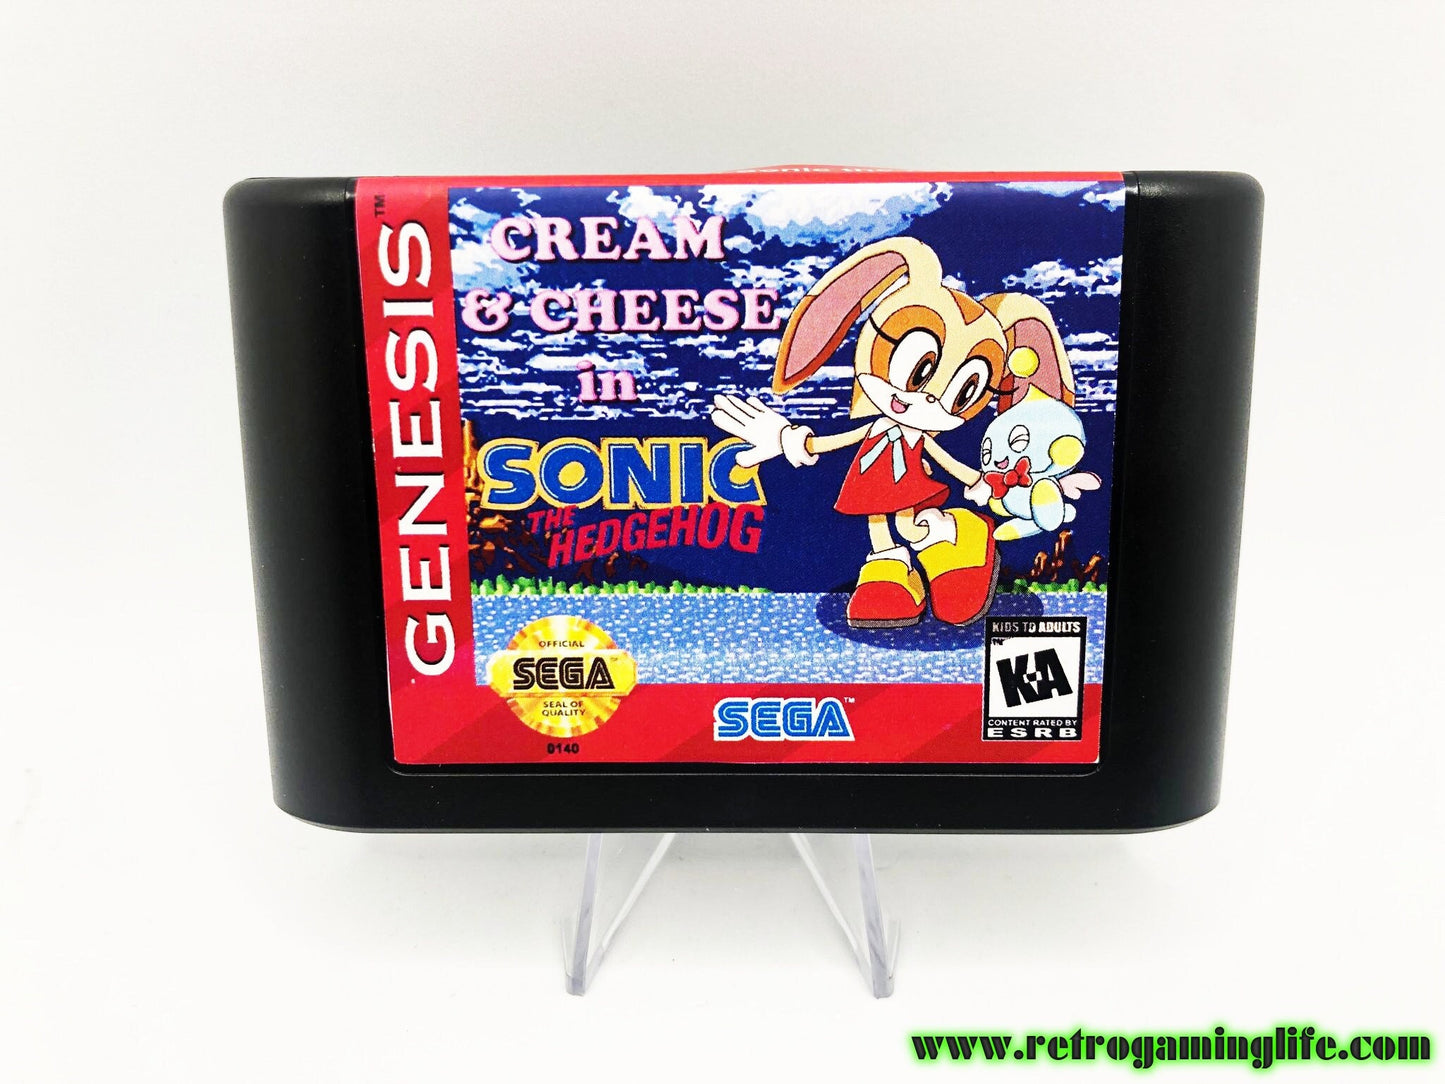 Cream and Cheese in Sonic 1 Sega Genesis Game Cart